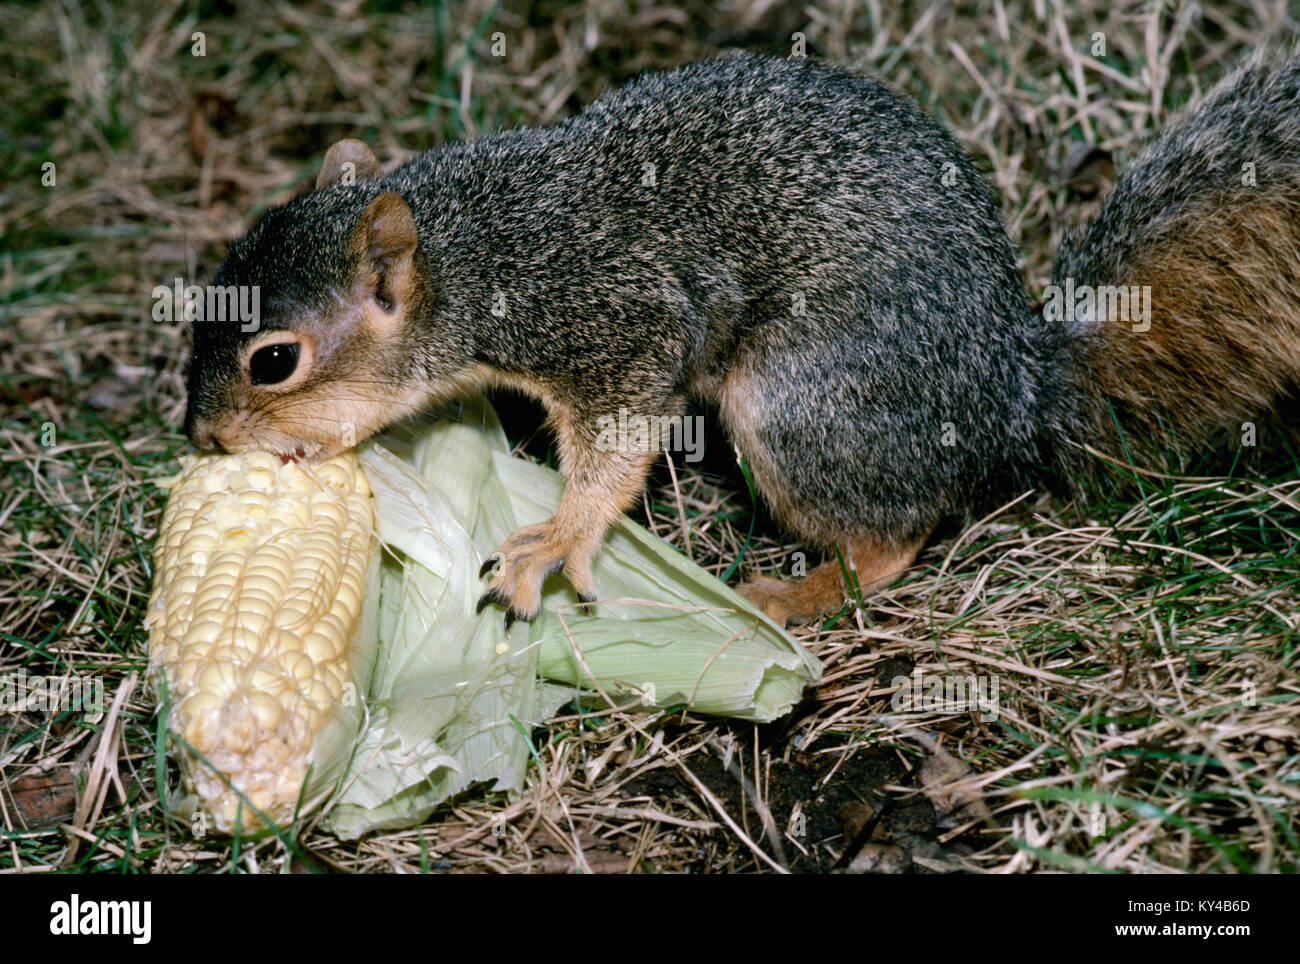 Junge Eichhörnchen, Sciuridae, essen Maiskolben im Gras, USA Stockfoto